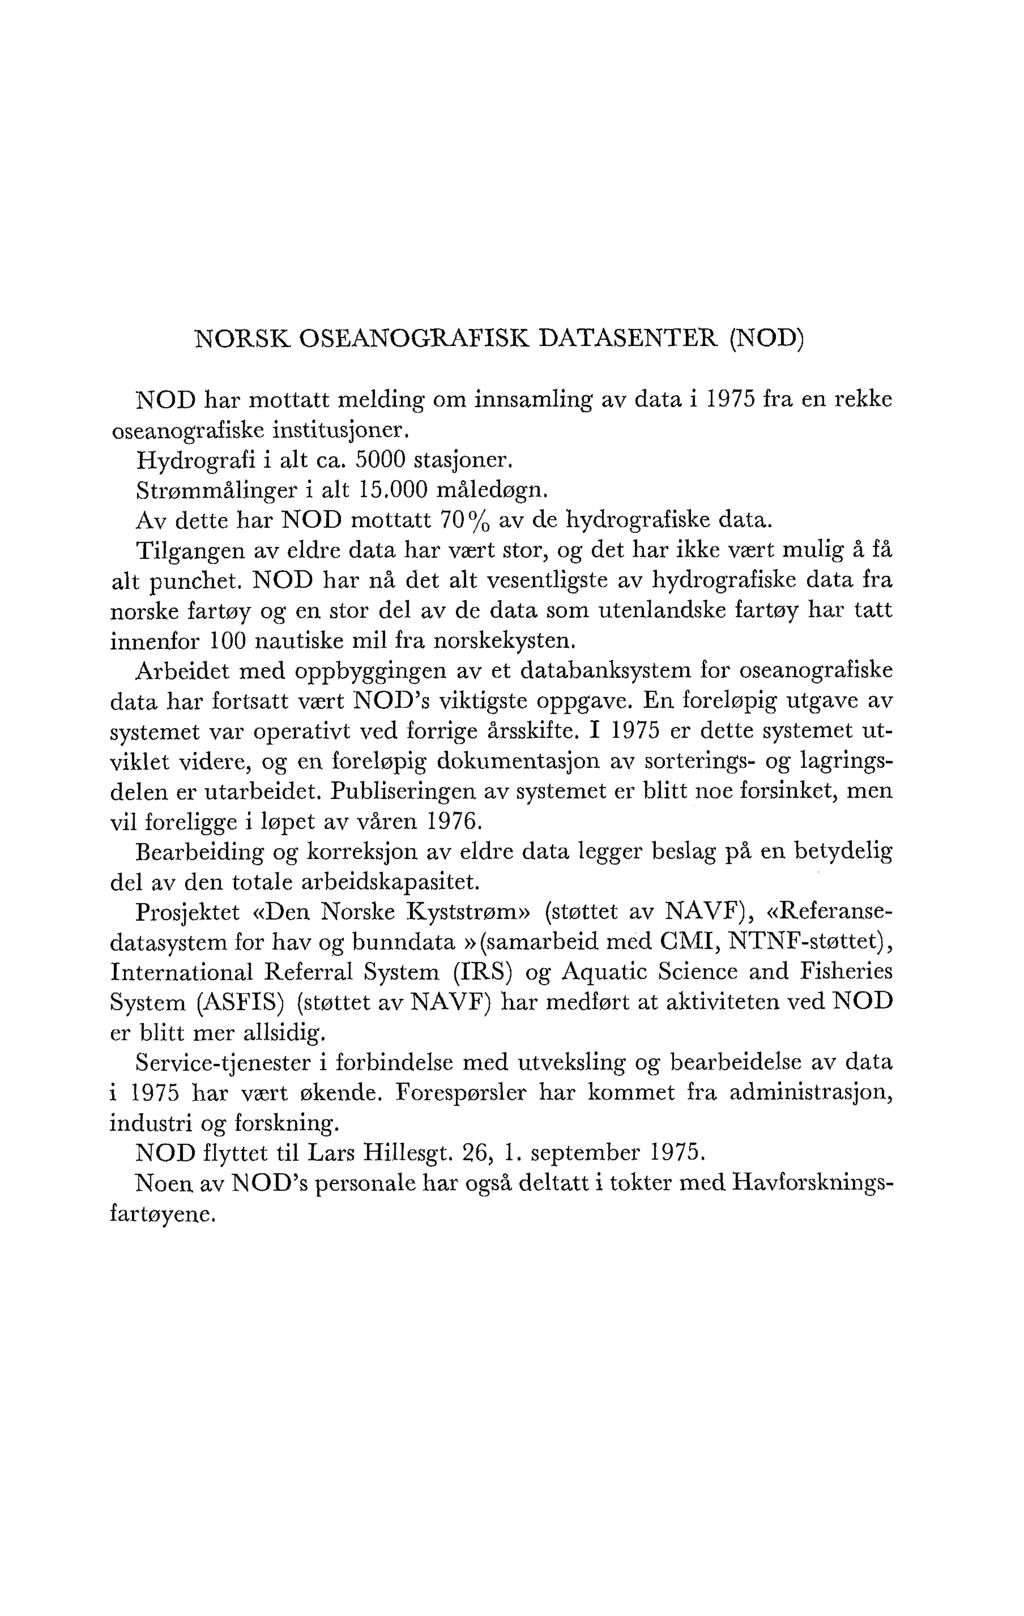 NORSK OSEANOGRAFISI< DATASENTER (NOD) NOD har mottatt melding om innsamling av data i 1975 fra en rekke oseanografiske institusjoner. Hydrografi i alt ca. 5000 stasjoner. Strømmålinger i alt 15.